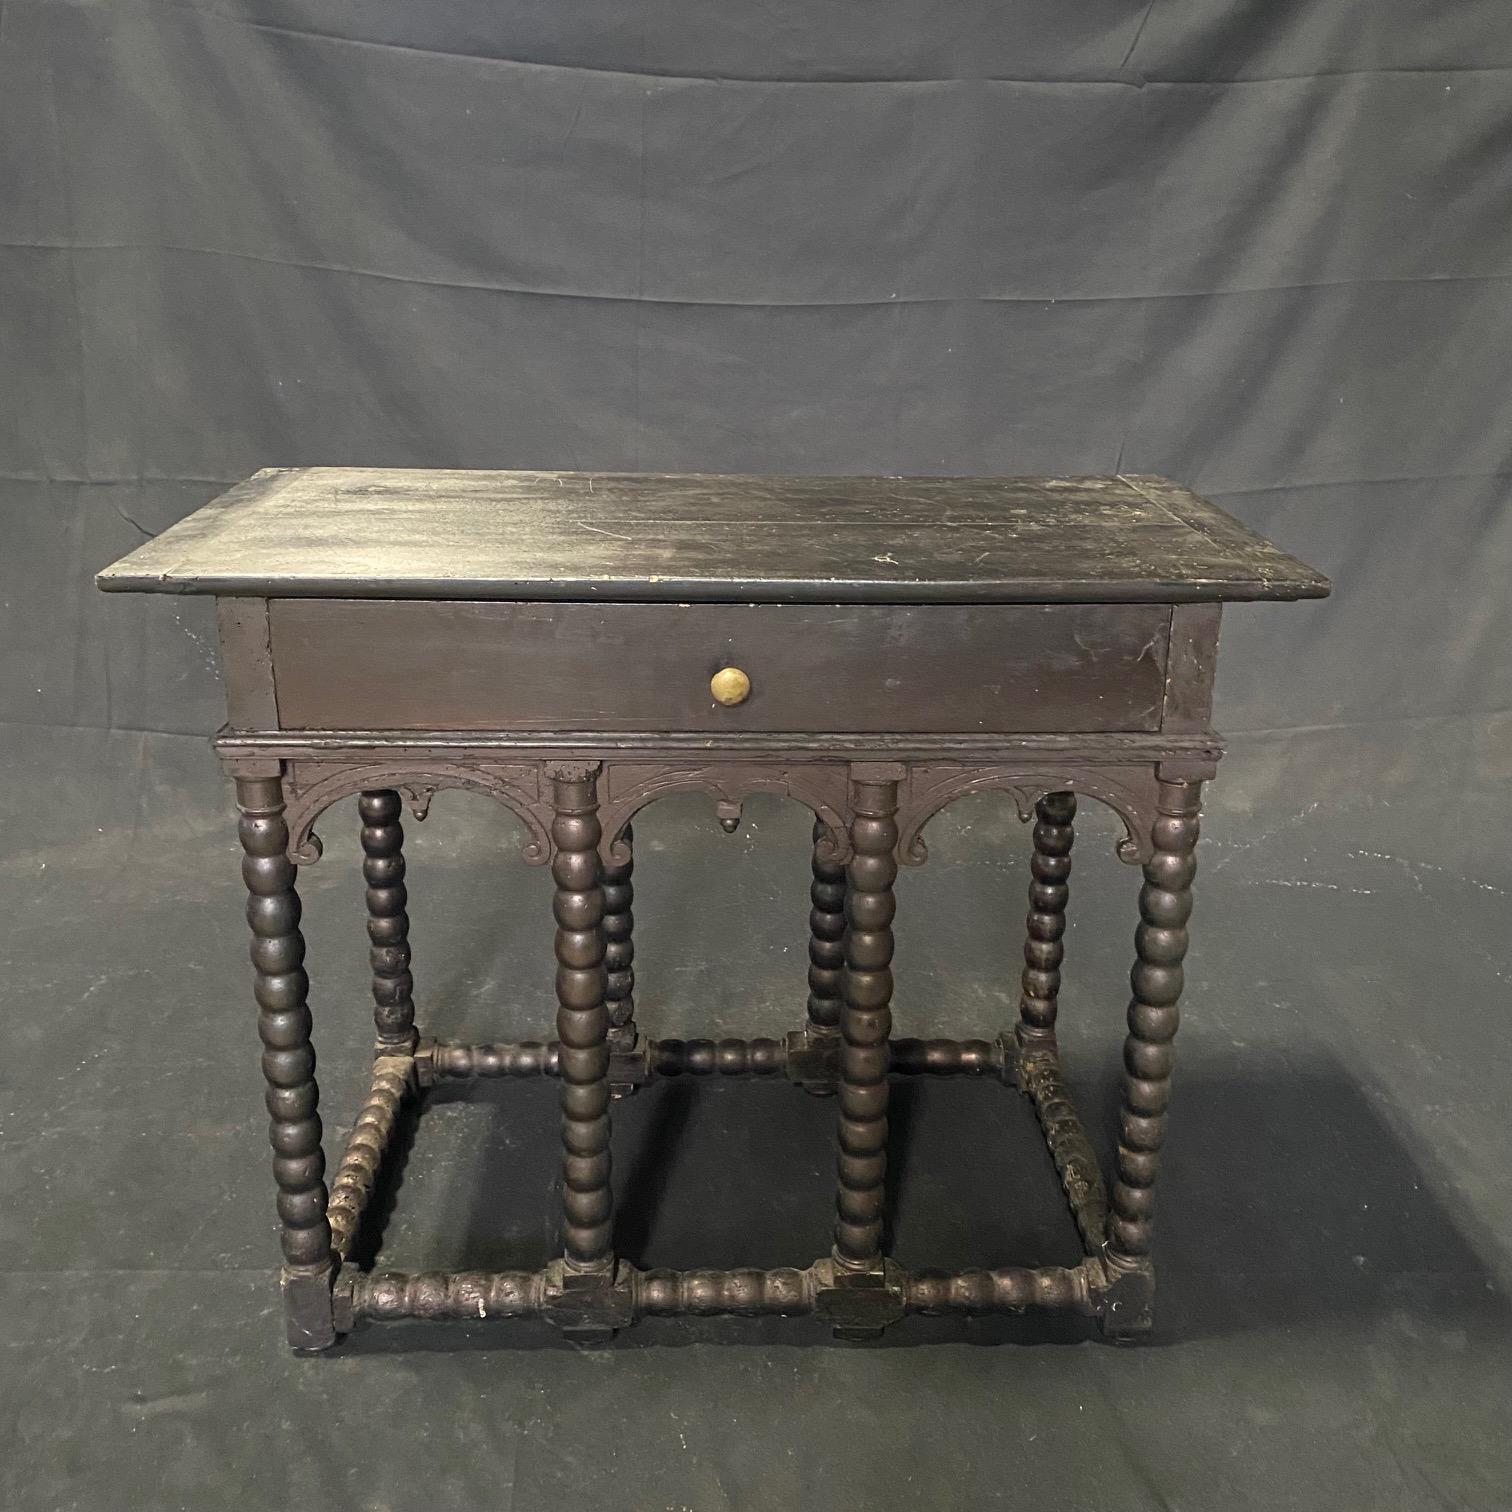  La table console ou table d'entrée en ébène du XIXe siècle a été fabriquée dans le style Renaissance et évoque également Napoléon III, avec les huit pieds torsadés en orge du début, tous reliés par une entretoise torsadée en orge. Ce qui rend cette